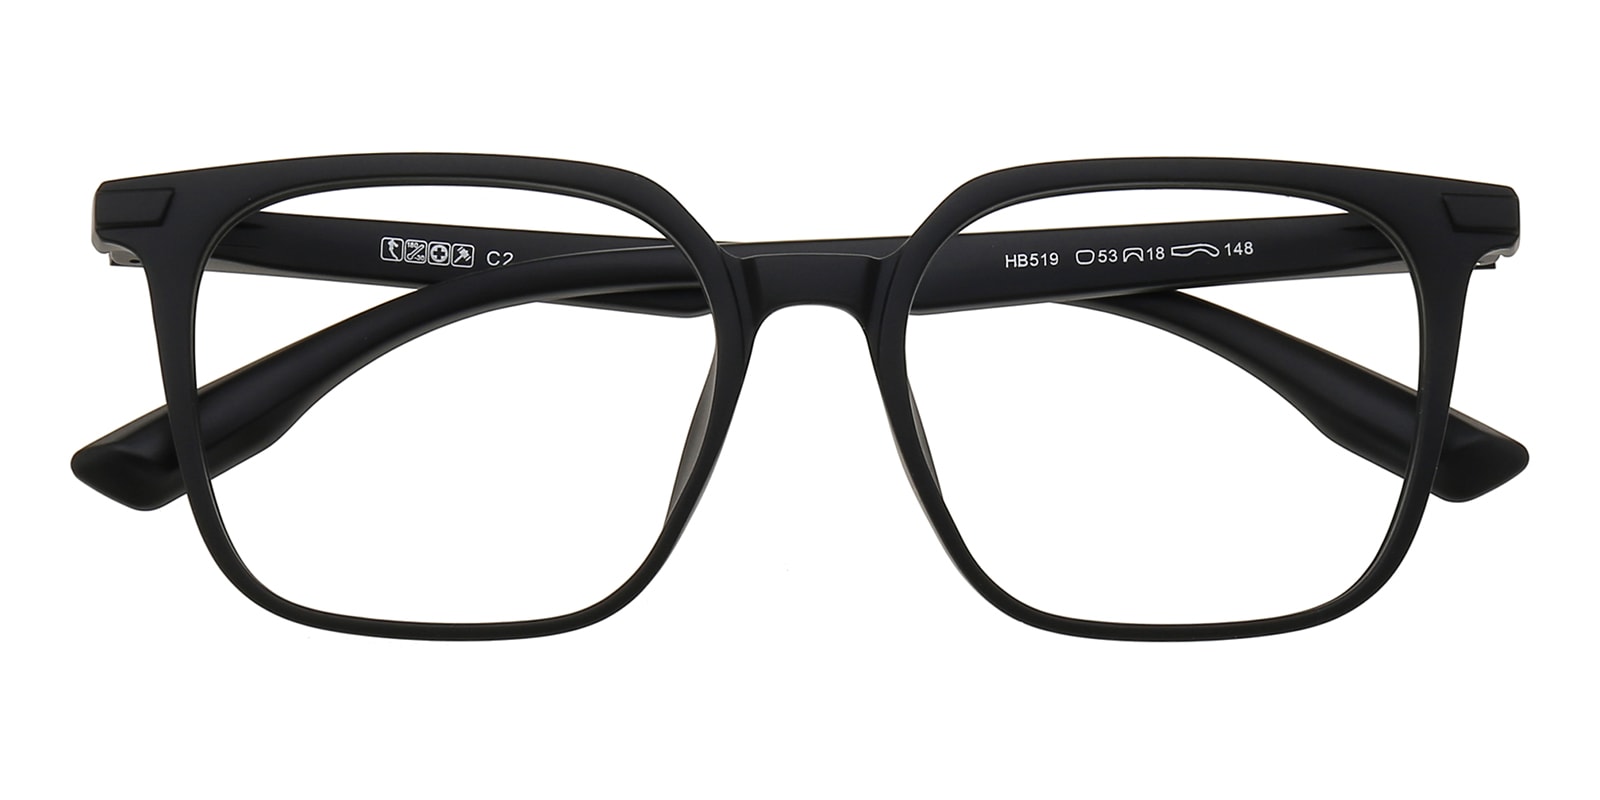 Square Eyeglasses, Full Frame Mblack TR90 - FP2836